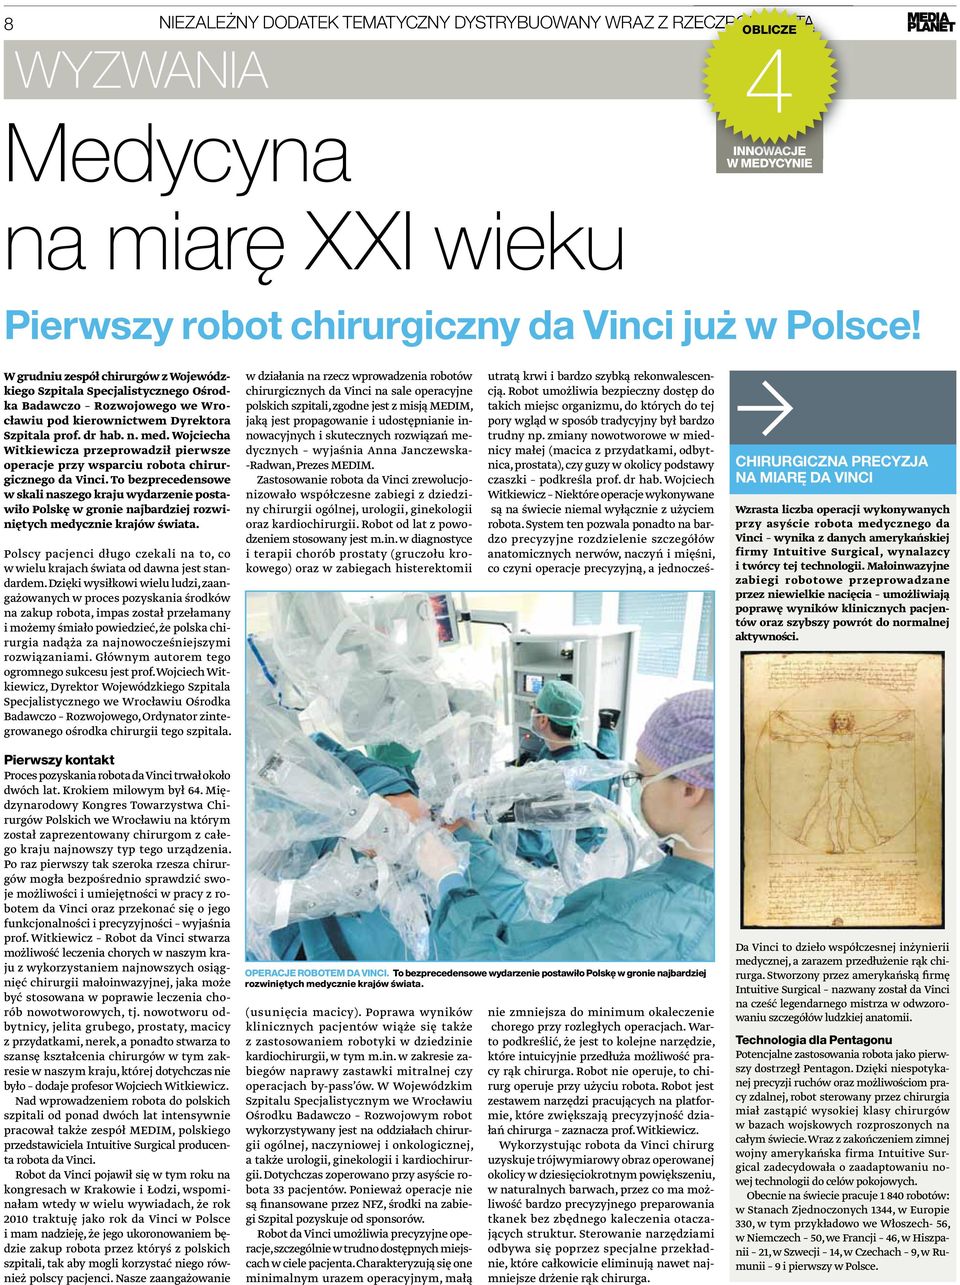 Wojciecha Witkiewicza przeprowadził pierwsze operacje przy wsparciu robota chirurgicznego da Vinci.